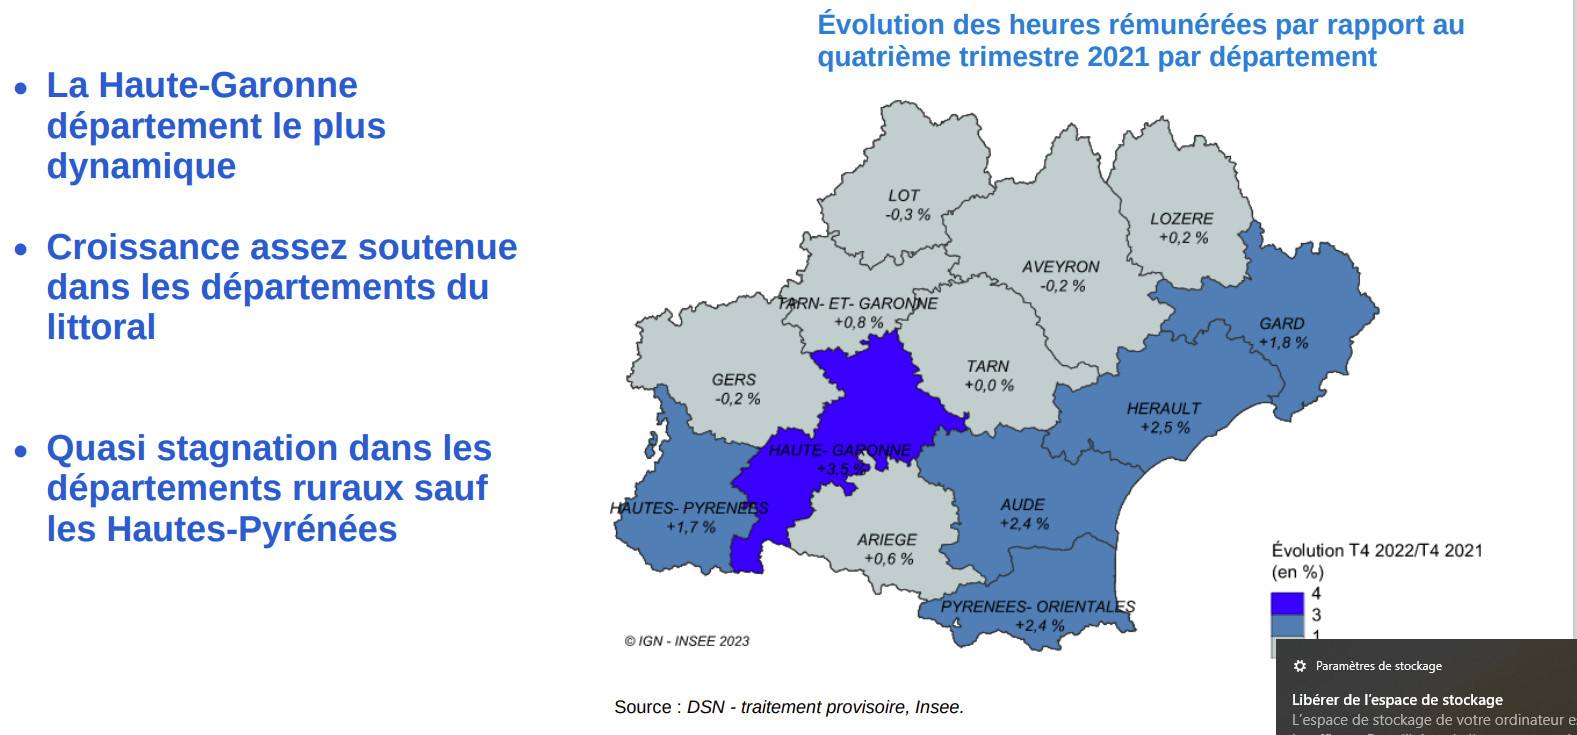 La Haute-Garonne département le plus dynamique